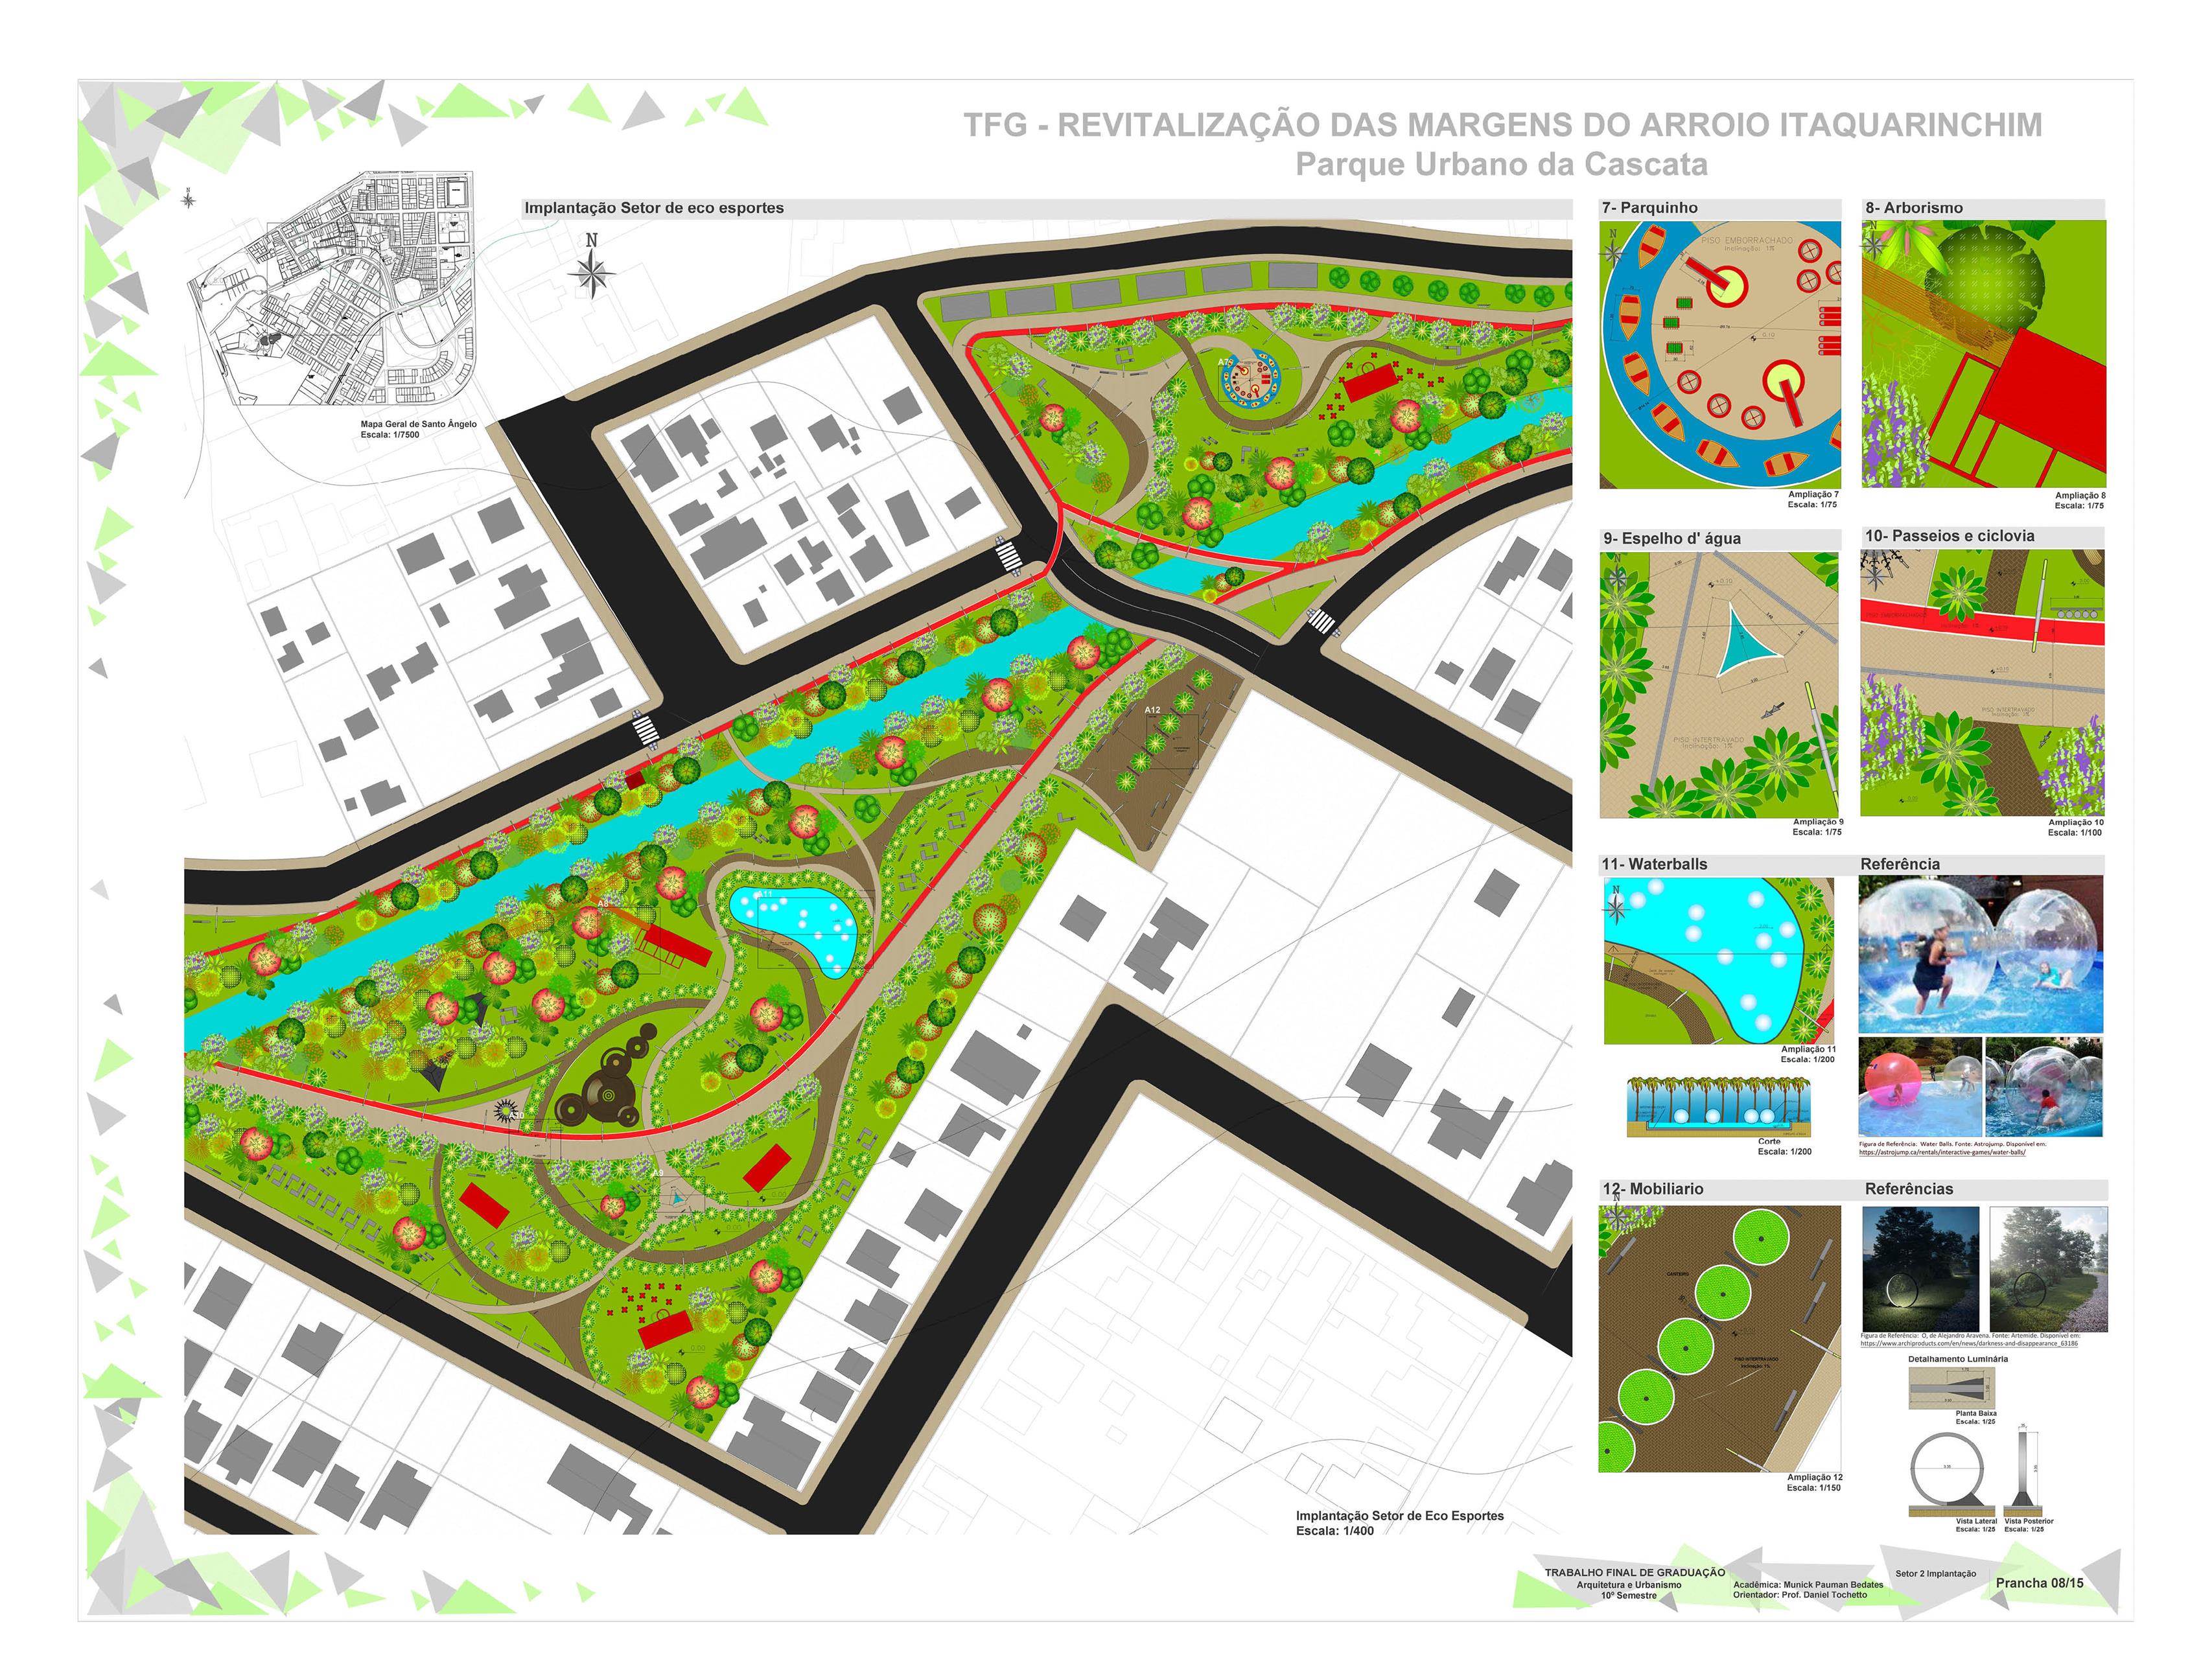 Revitalização das Margens do Arroio Itaquarinchim - Parque Urbano da Cascata8 (Copy)